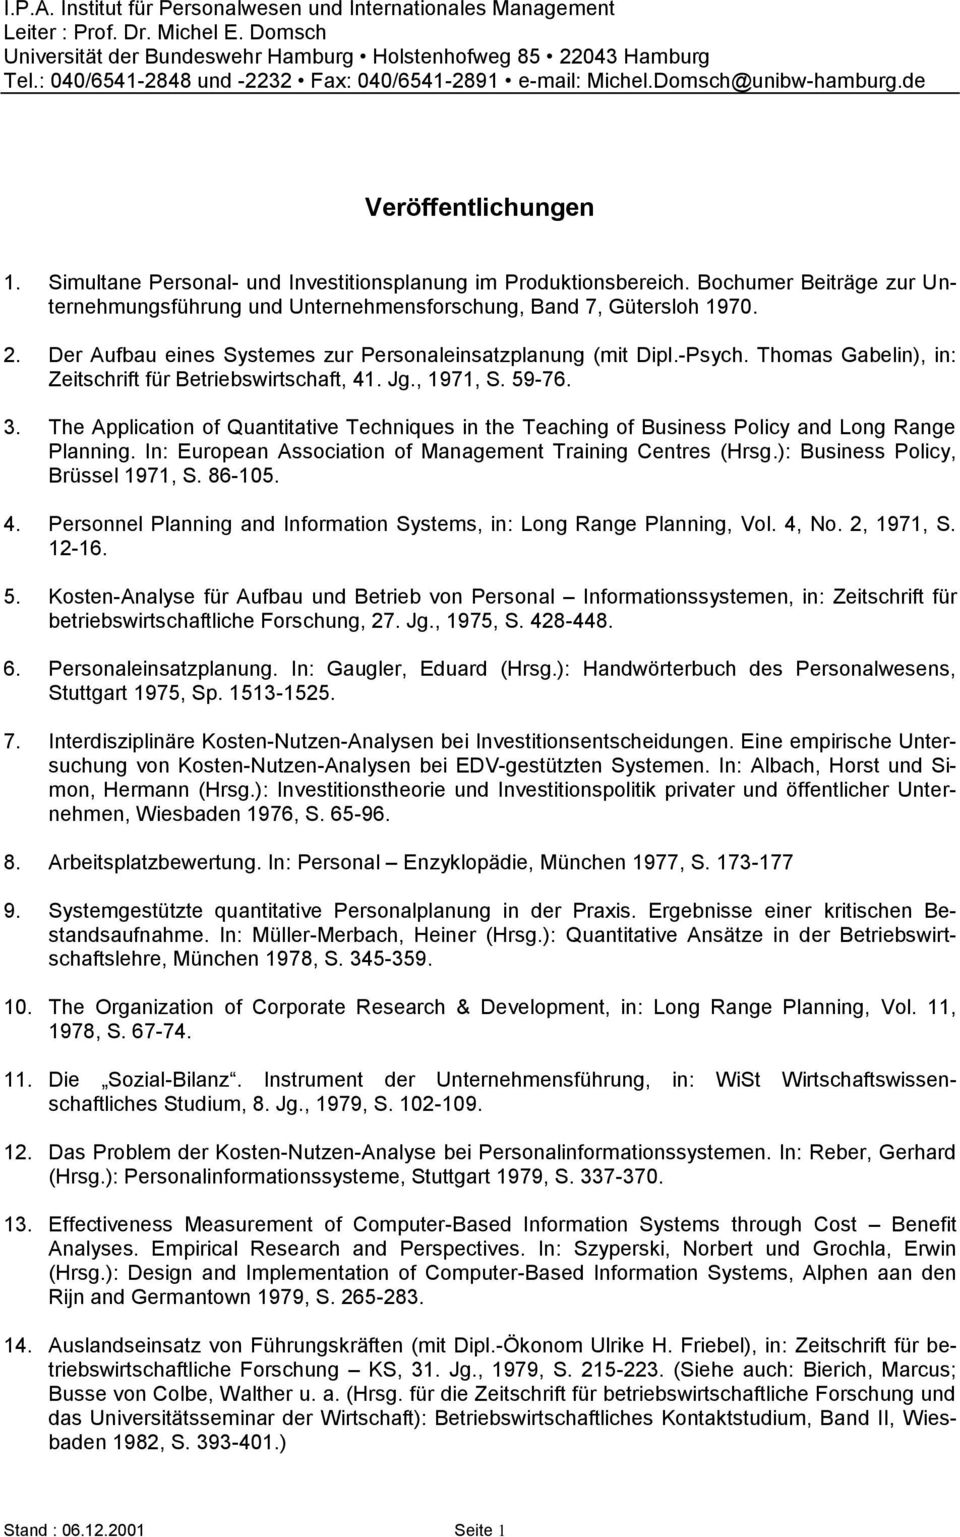 Bochumer Beiträge zur Unternehmungsführung und Unternehmensforschung, Band 7, Gütersloh 1970. 2. Der Aufbau eines Systemes zur Personaleinsatzplanung (mit Dipl.-Psych.